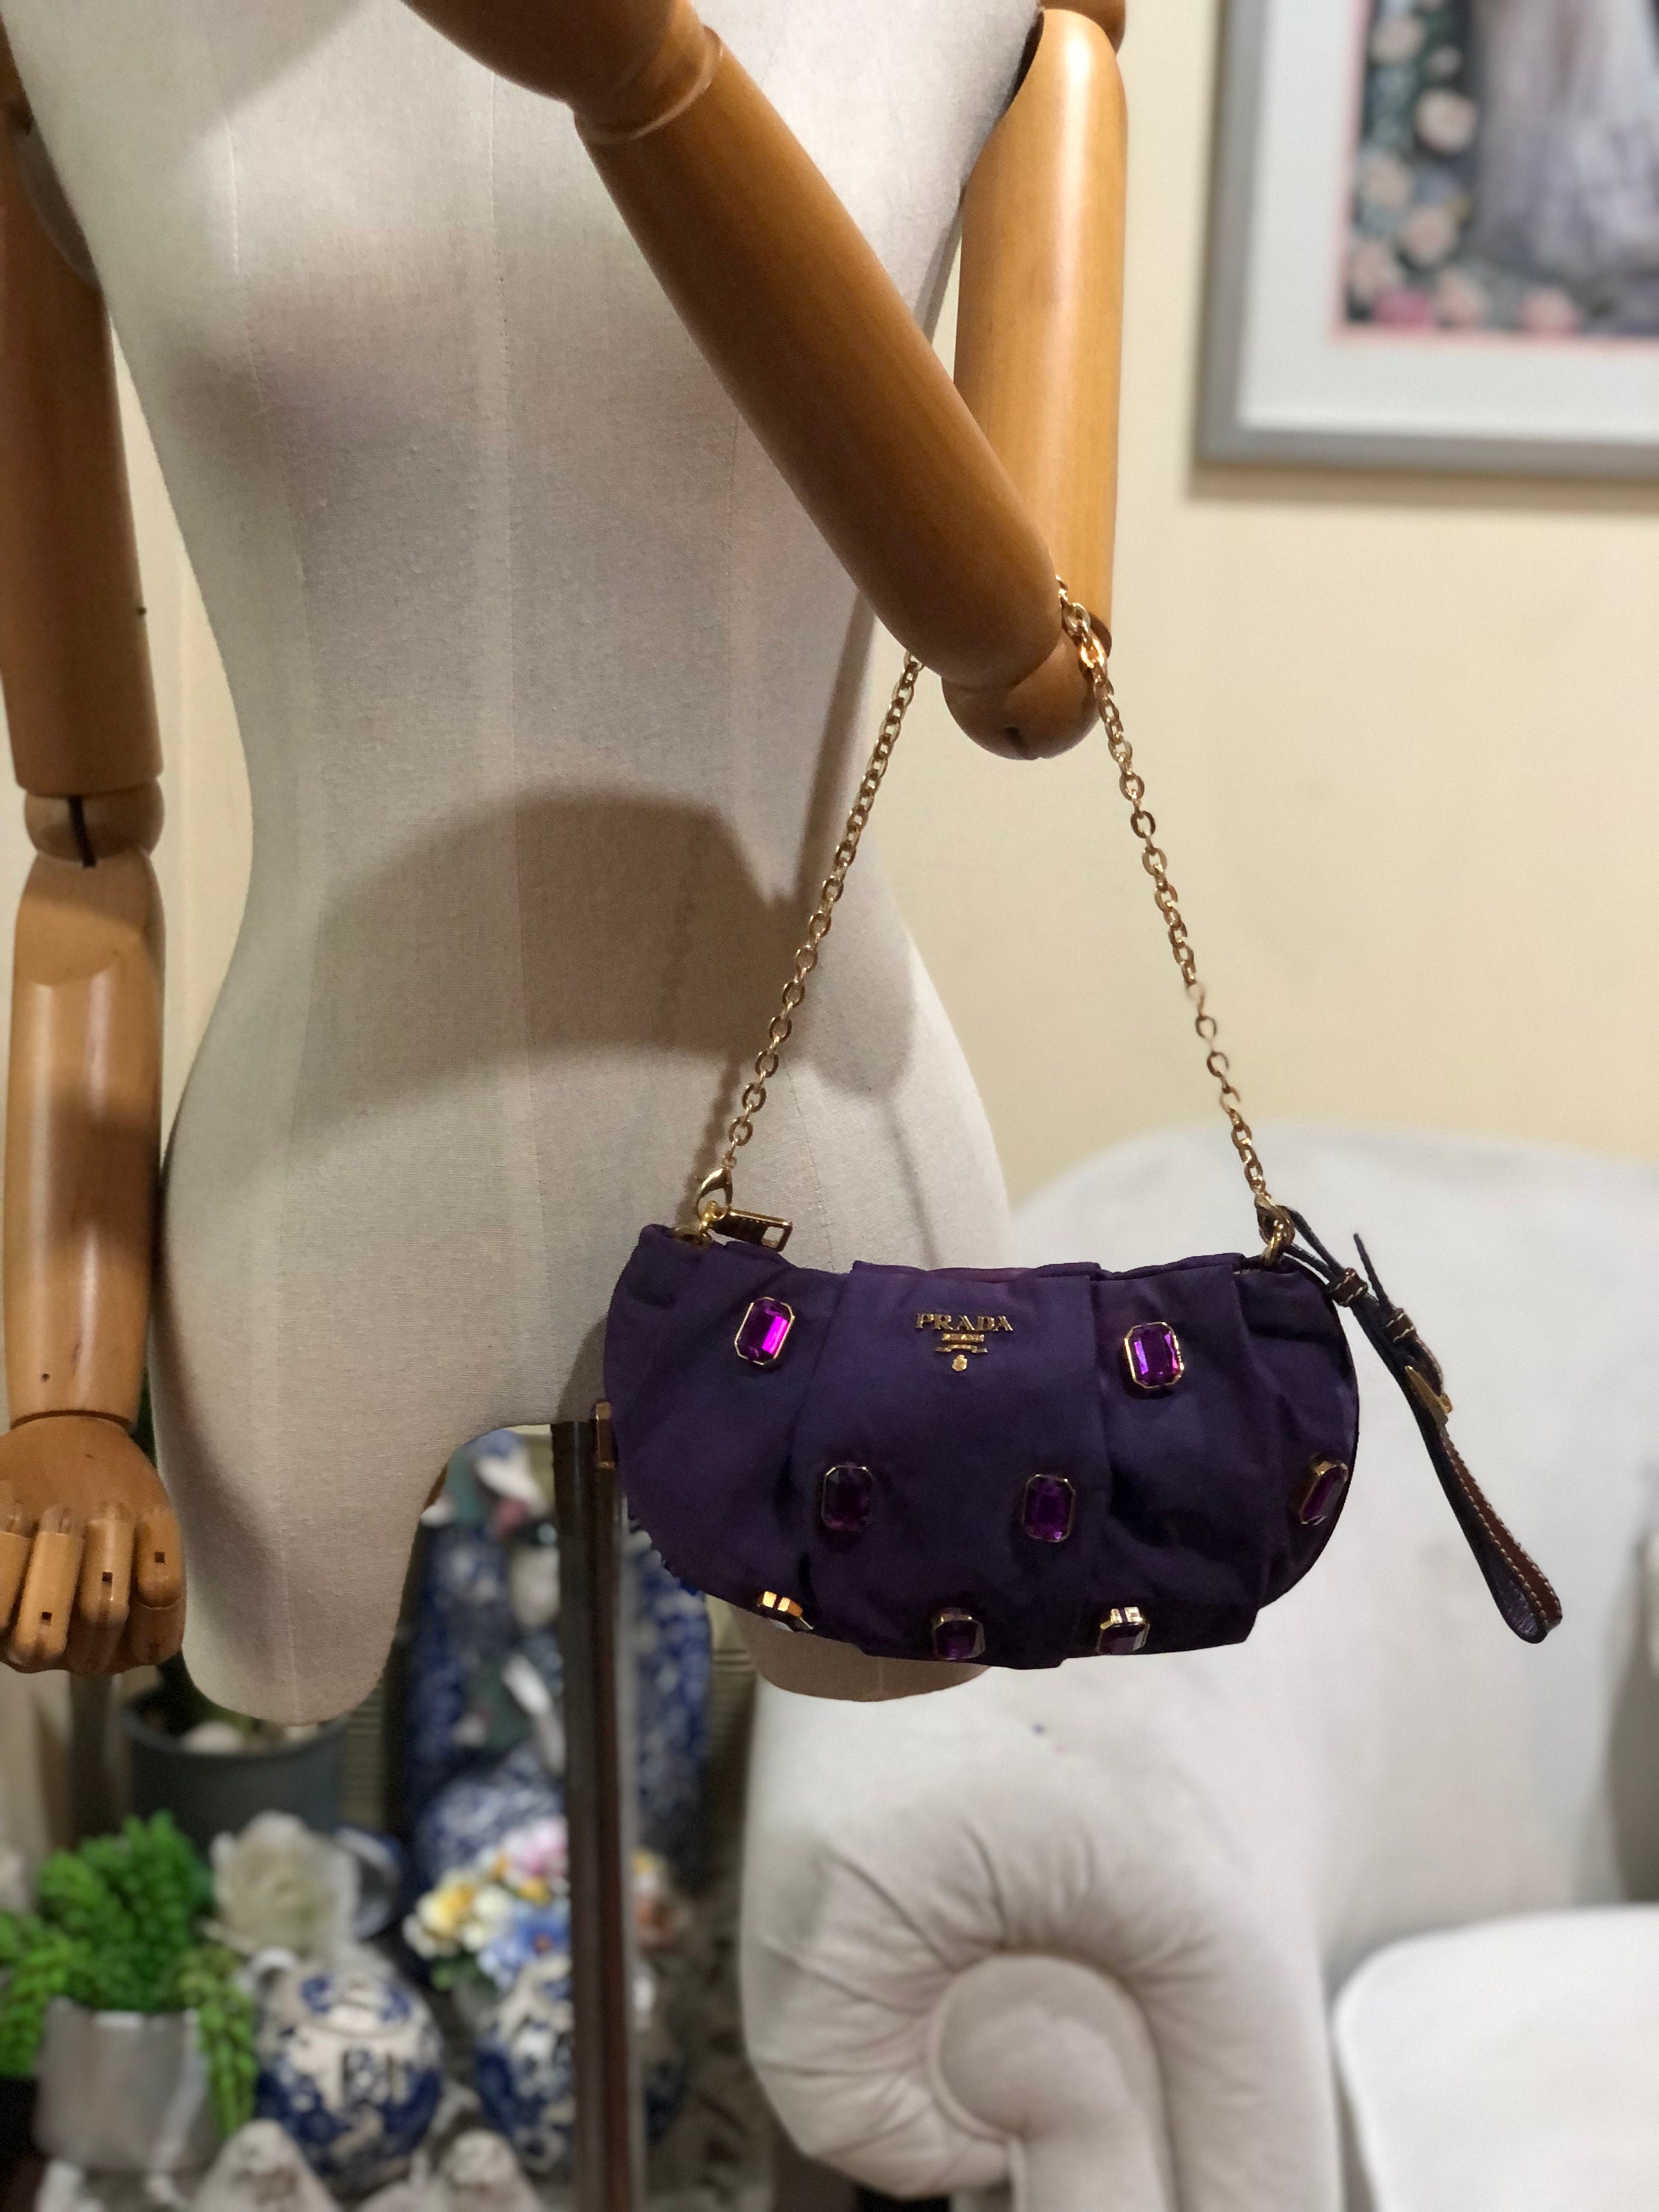 Prada Embellished Purple Nylon Clutch Added Strap Shoulder Bag